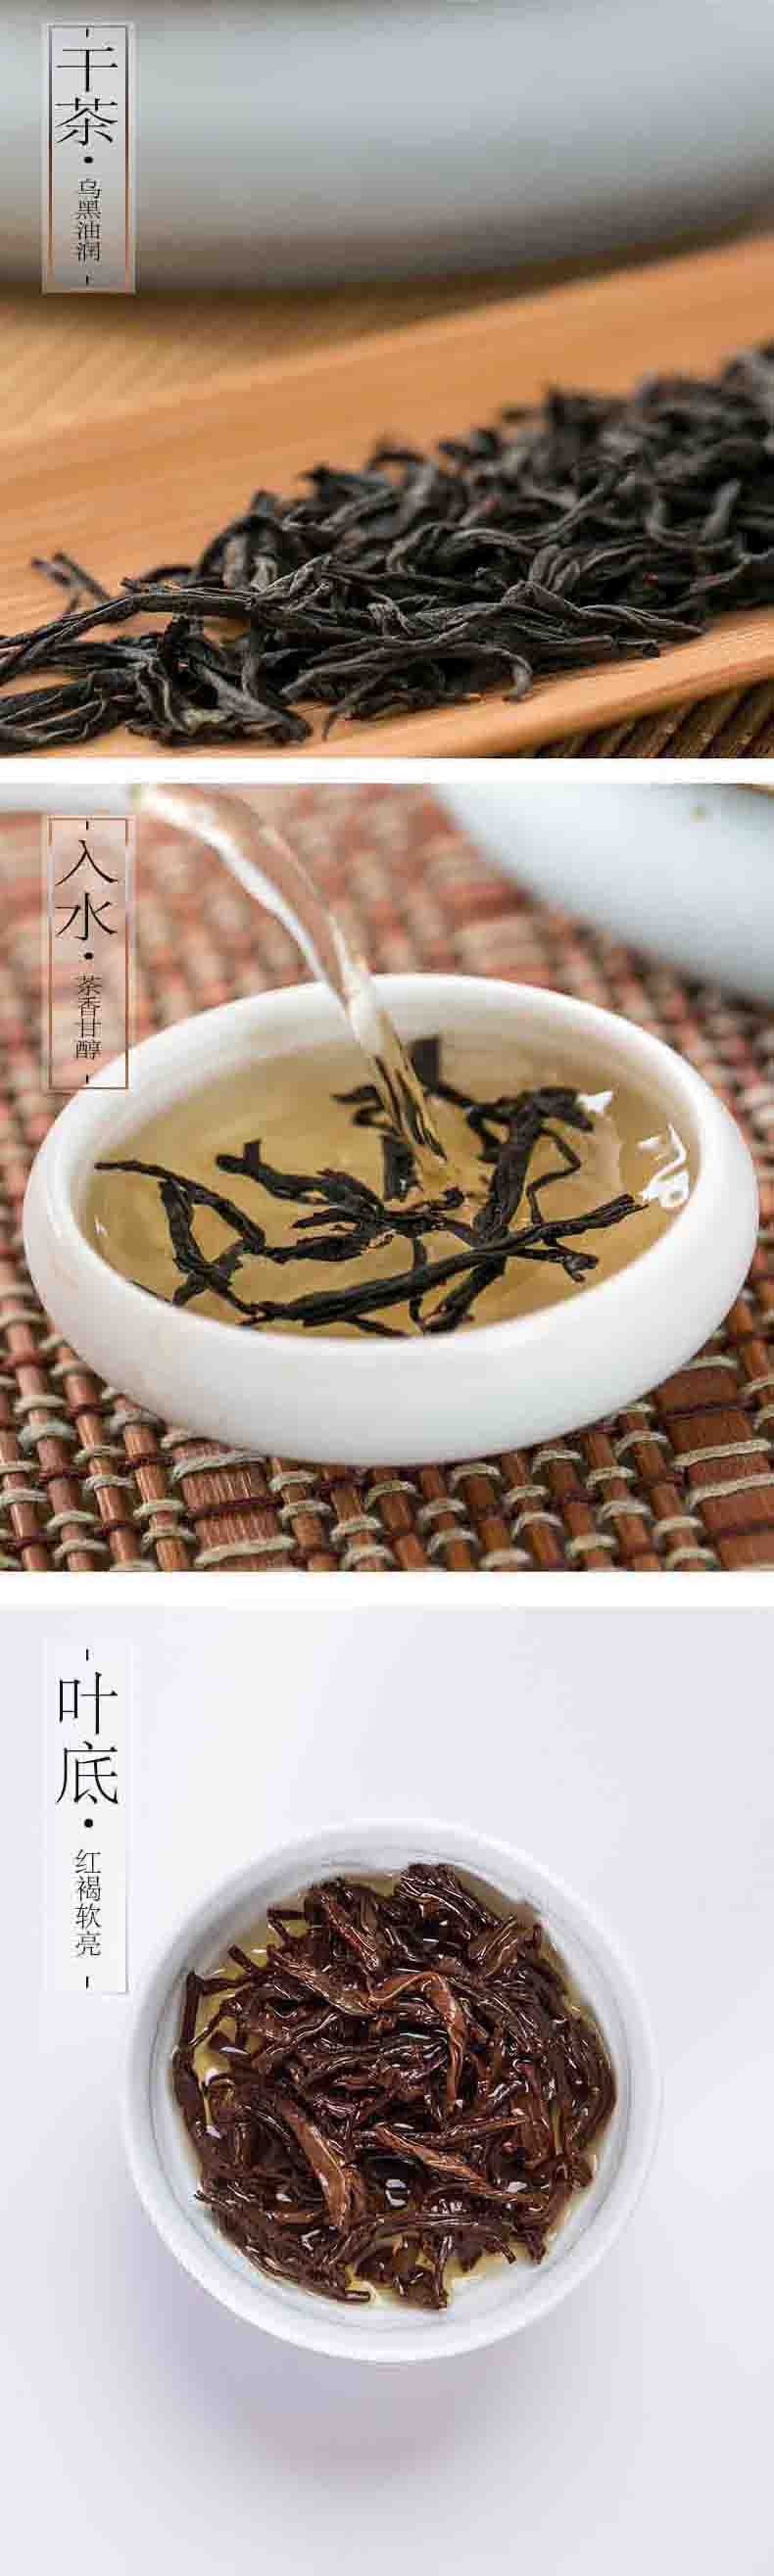  洛阳农品 手绘小镇 信阳红一级红茶180g